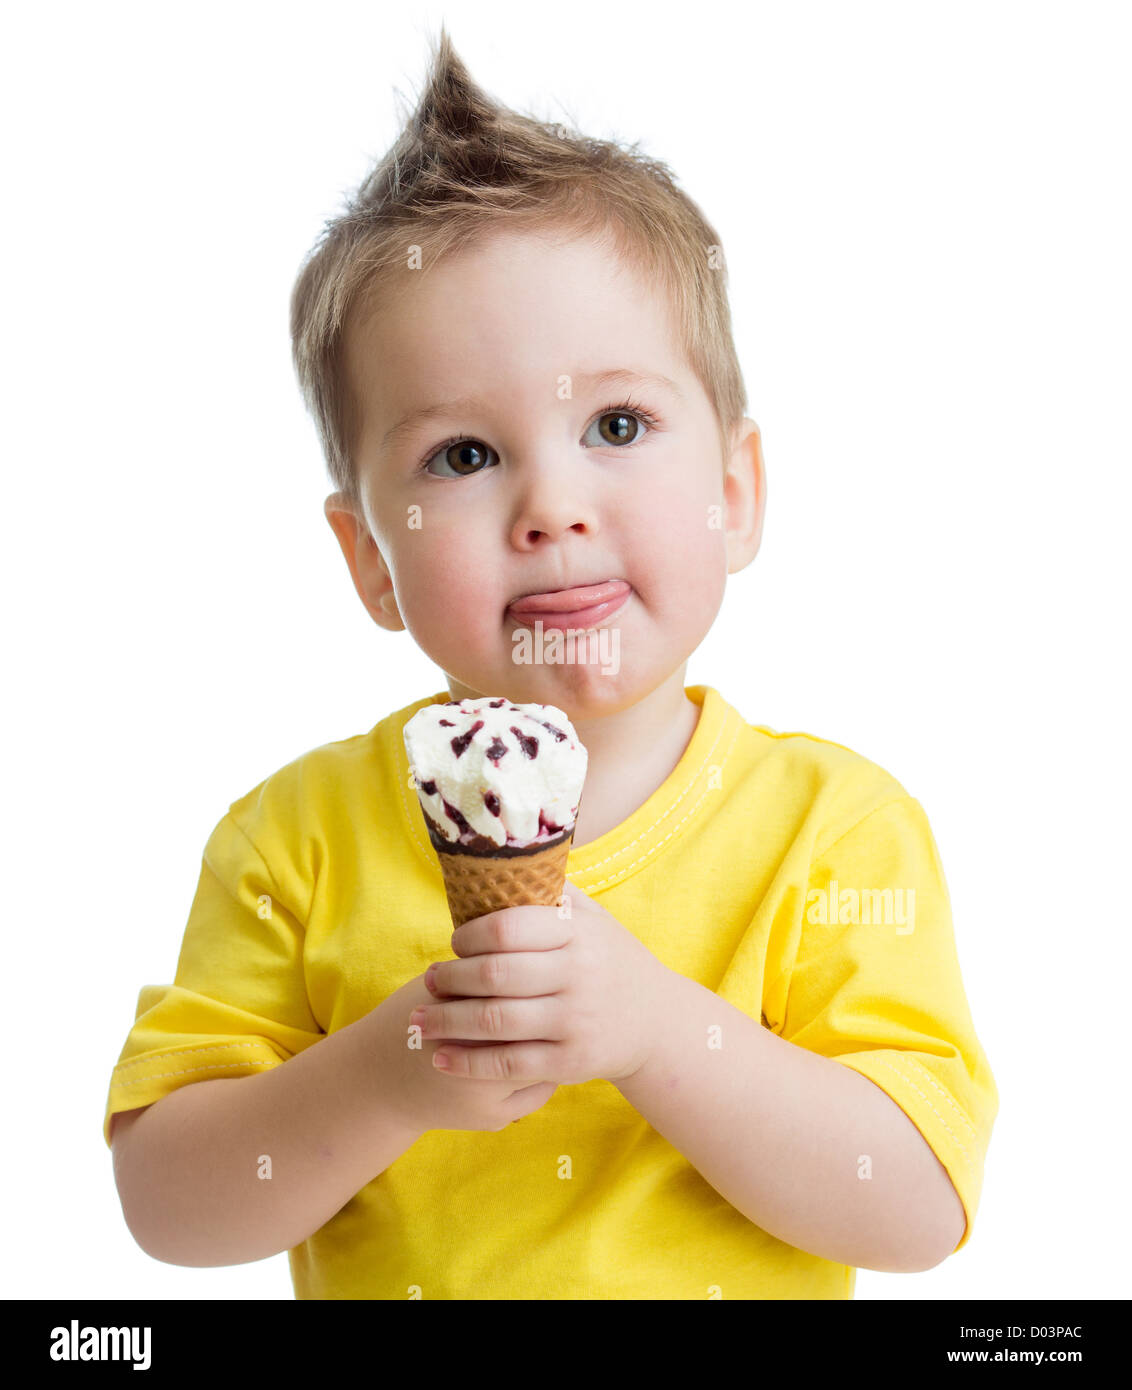 Kinder essen Eis isoliert auf weiss Stockfoto